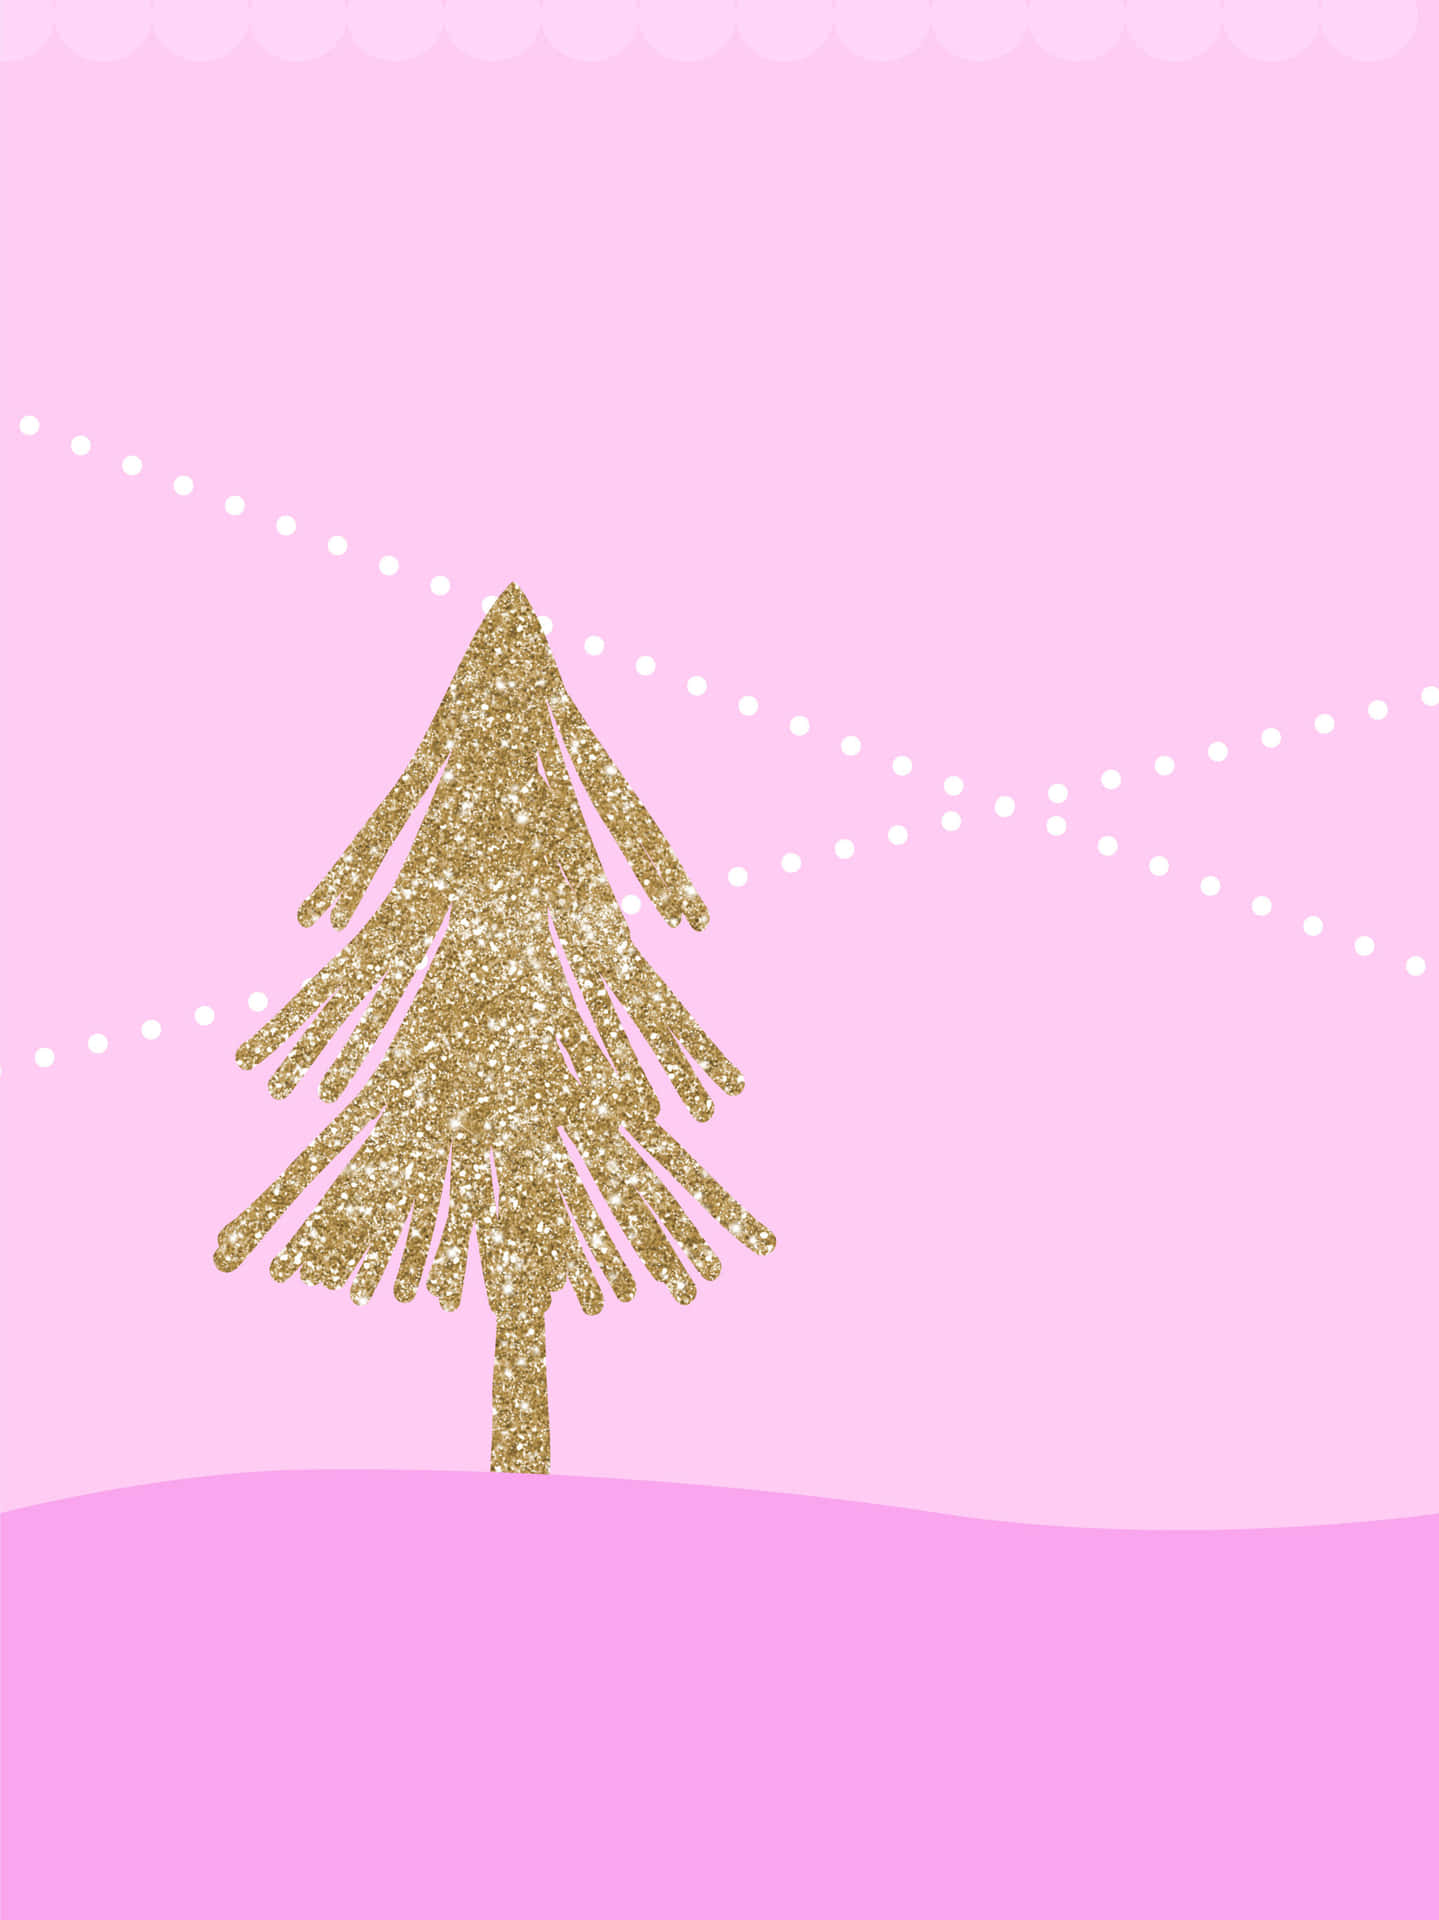 Einweihnachtsbaum Auf Einem Rosa Hintergrund Wallpaper